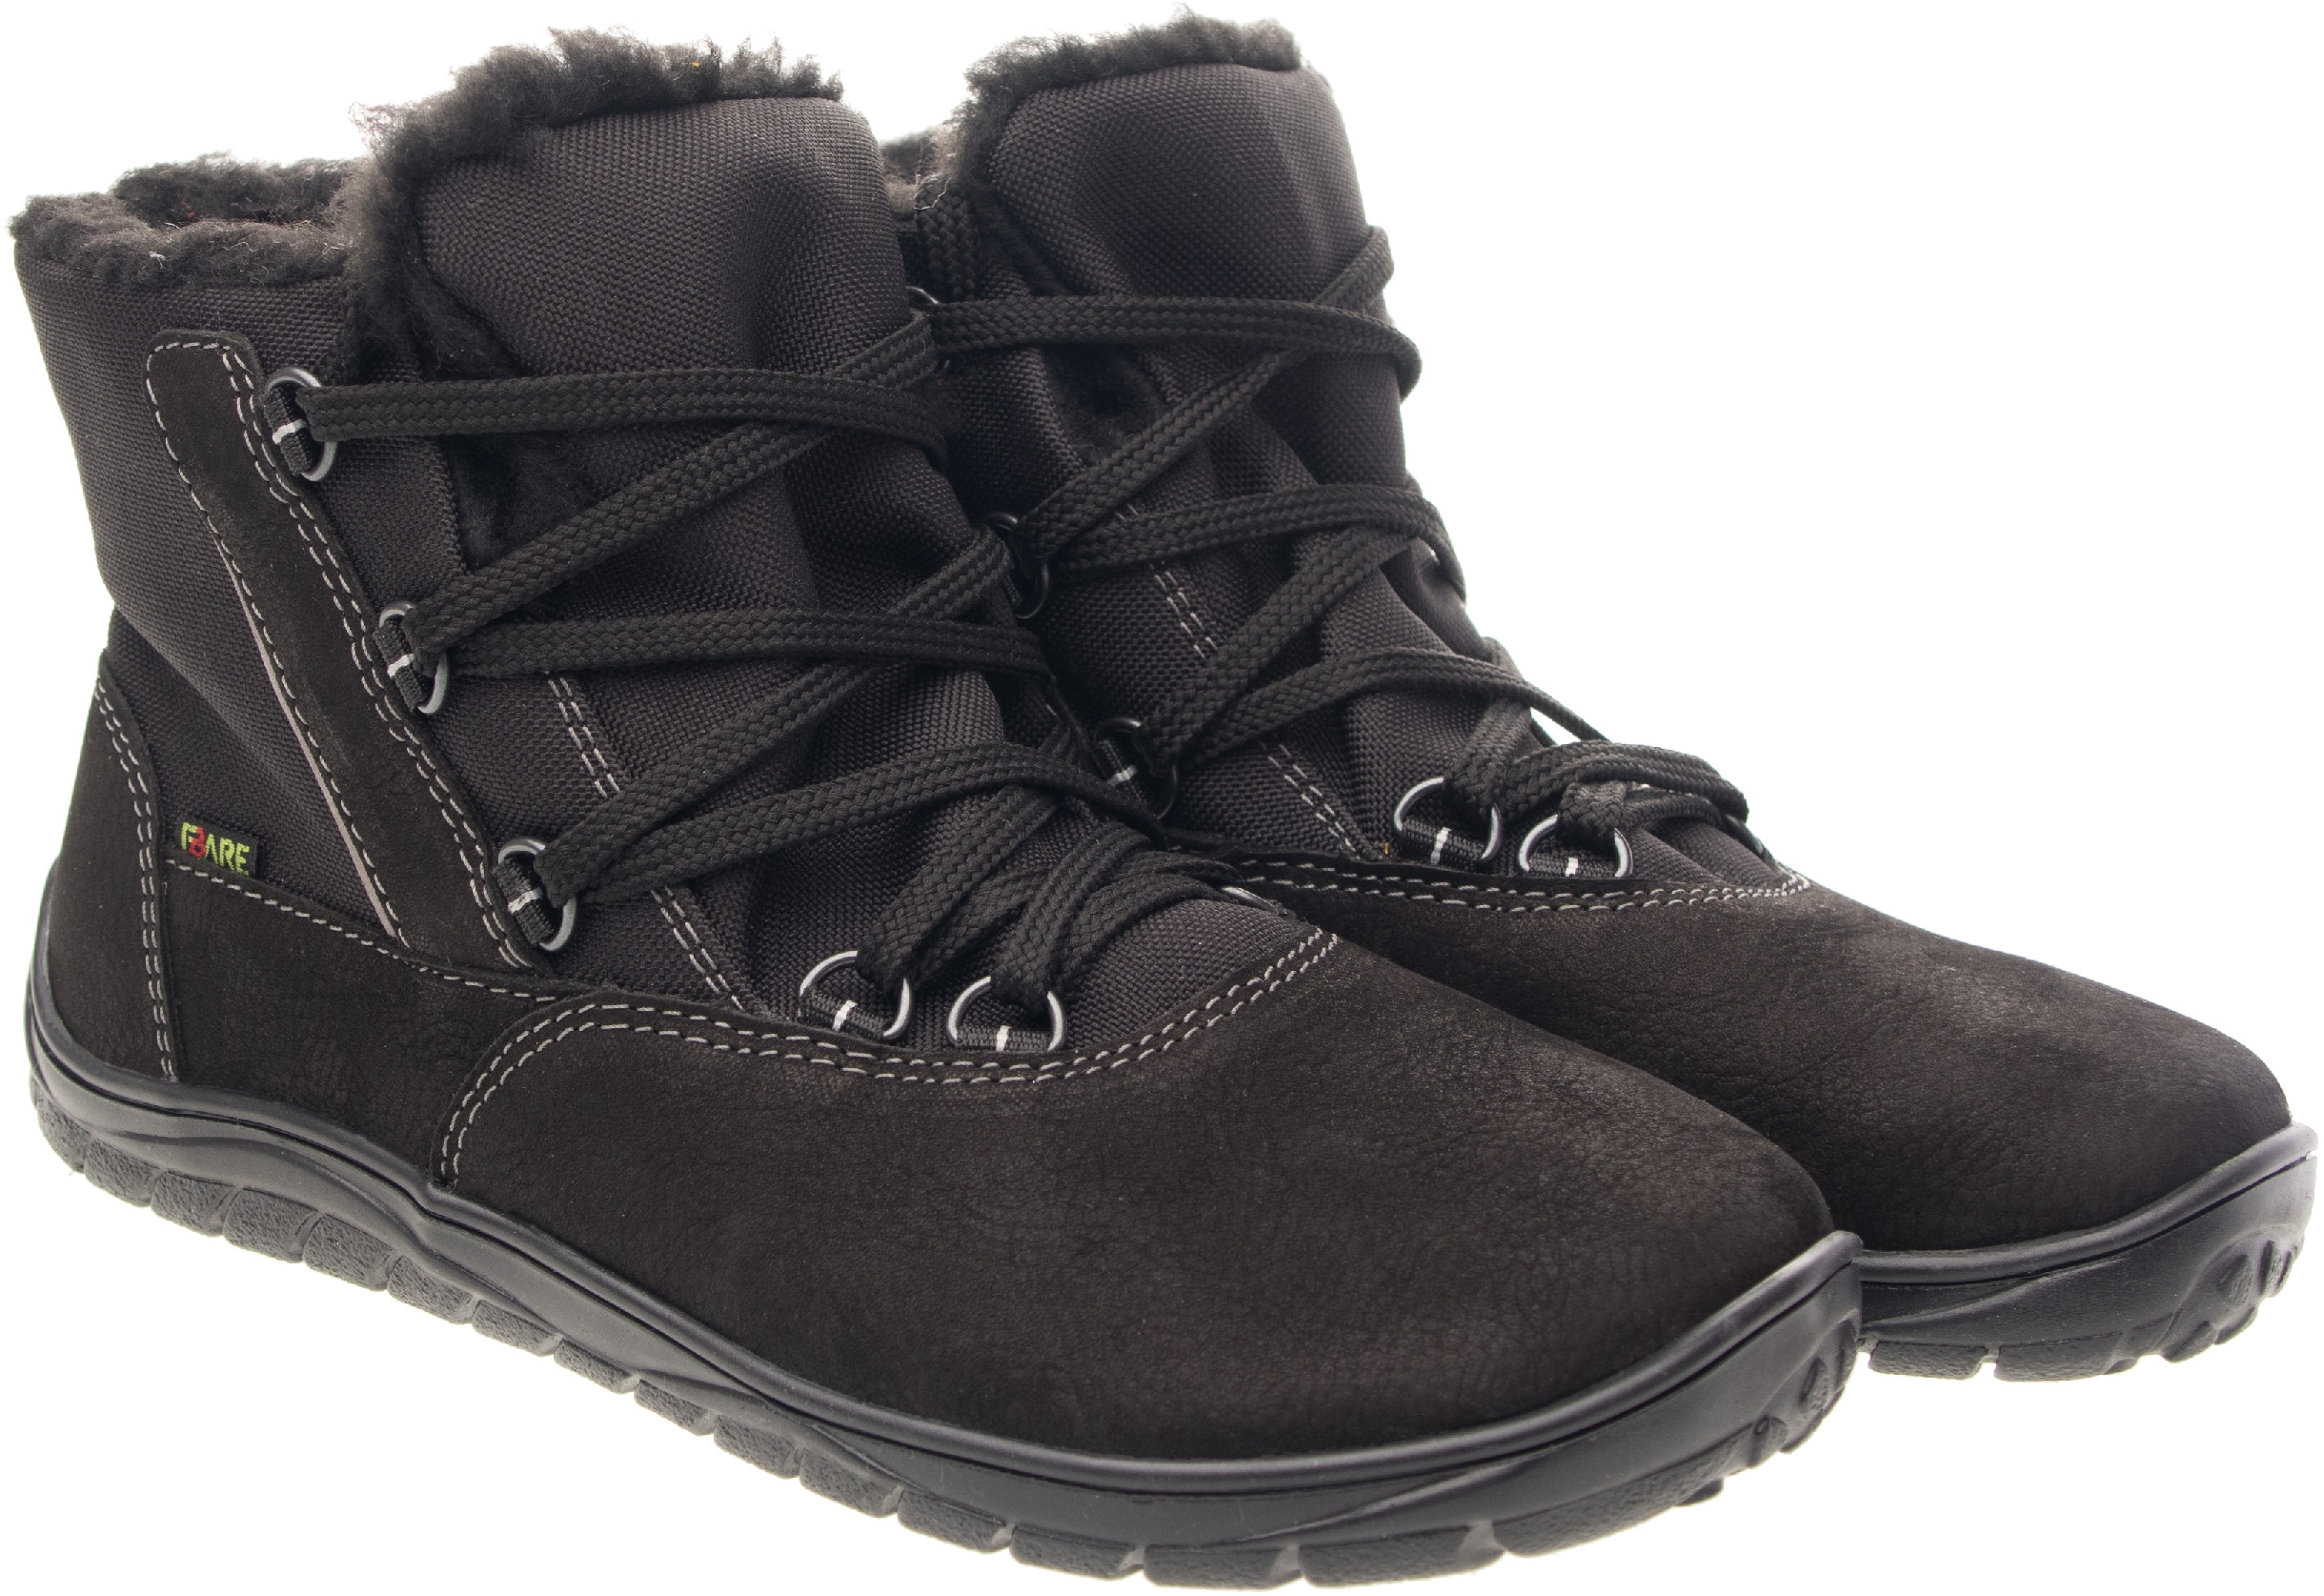 Fare Bare unisex zimní nepromokavé boty B5643112 Velikost obuvi: 34